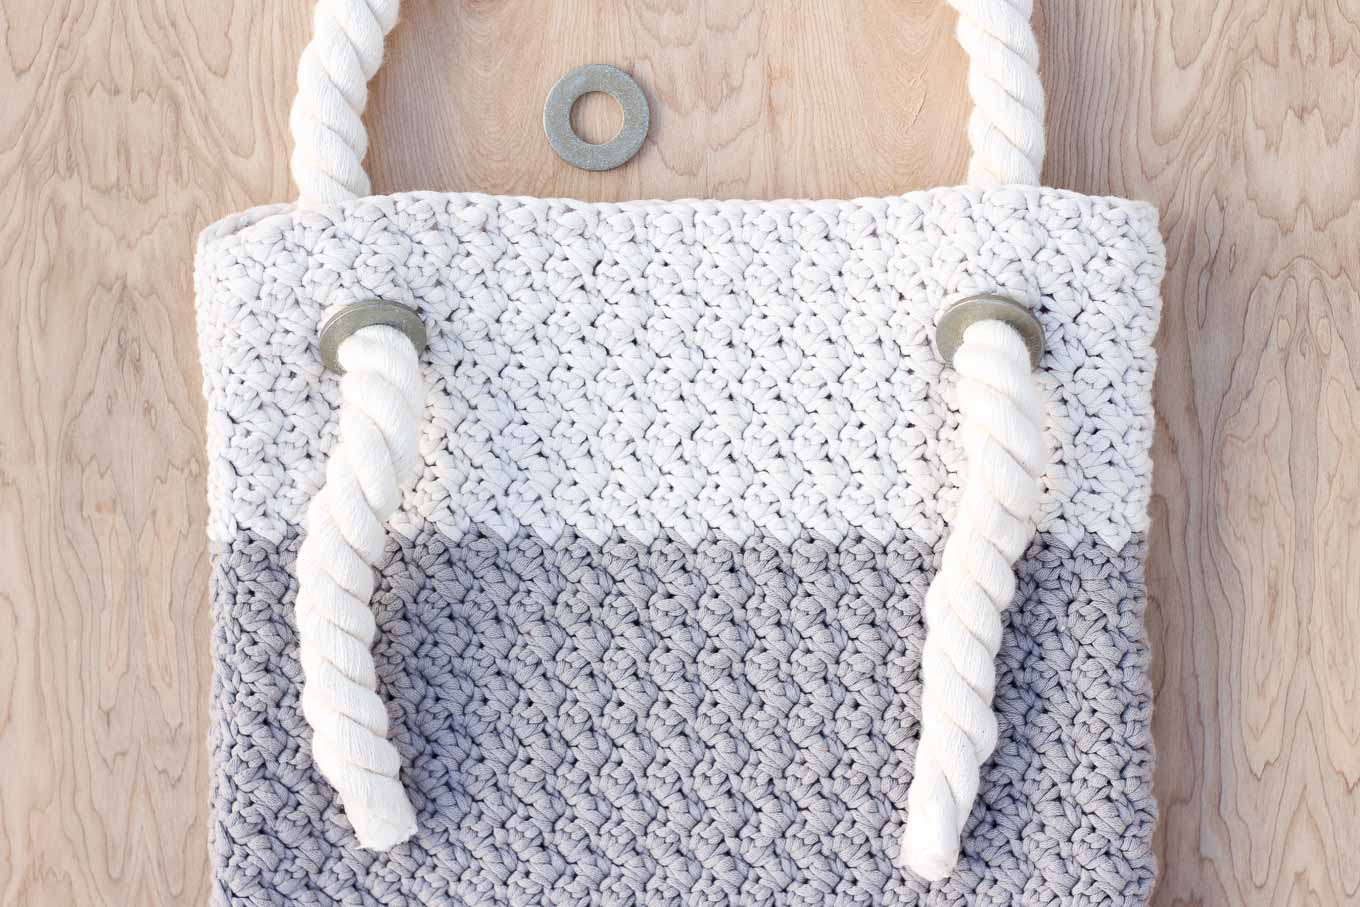 Crochet Hobo Bag Free Pattern Easy Modern Free Crochet Bag Pattern For Beginners